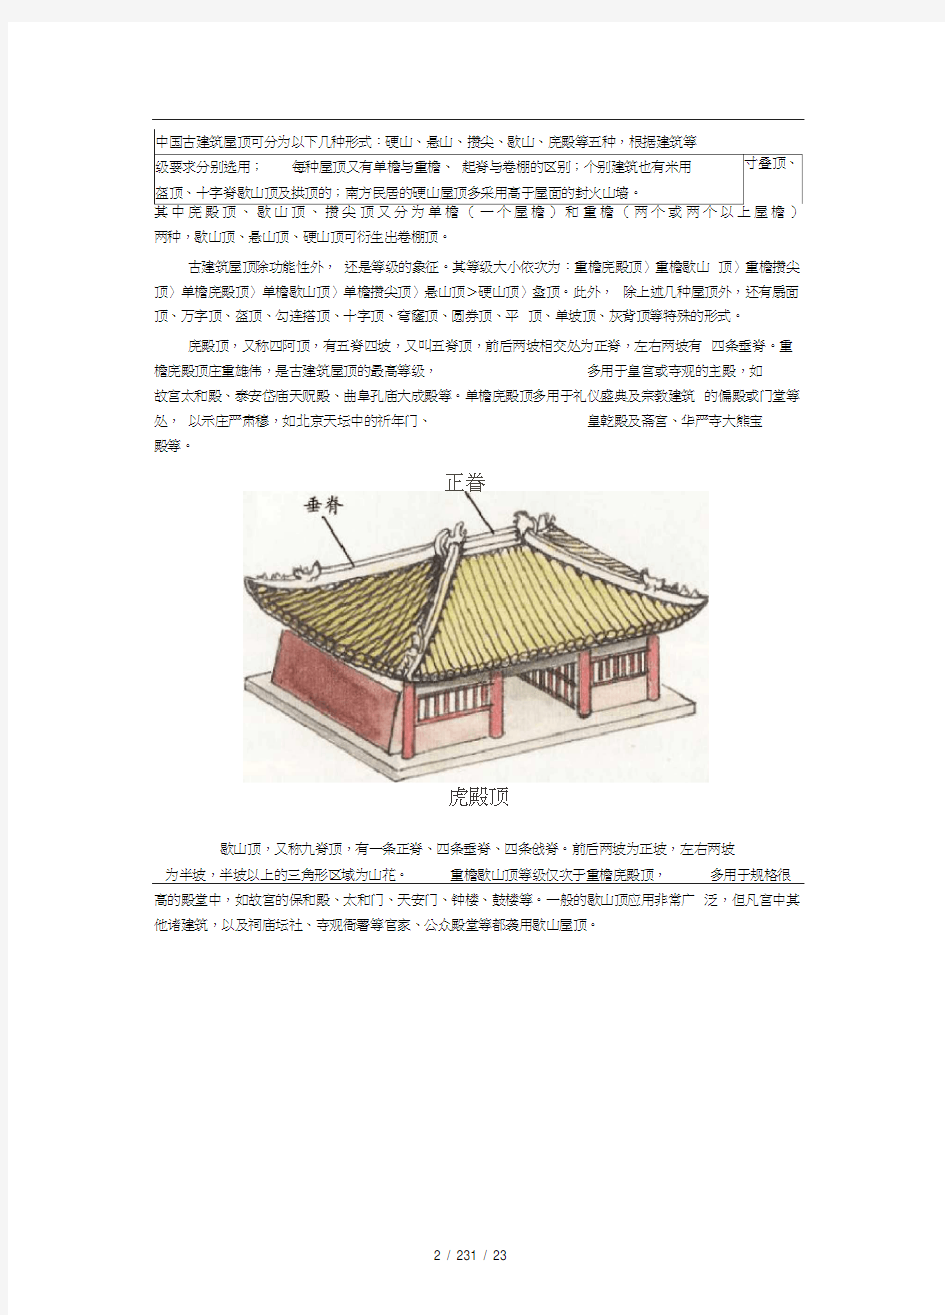 中国古建筑常识图解